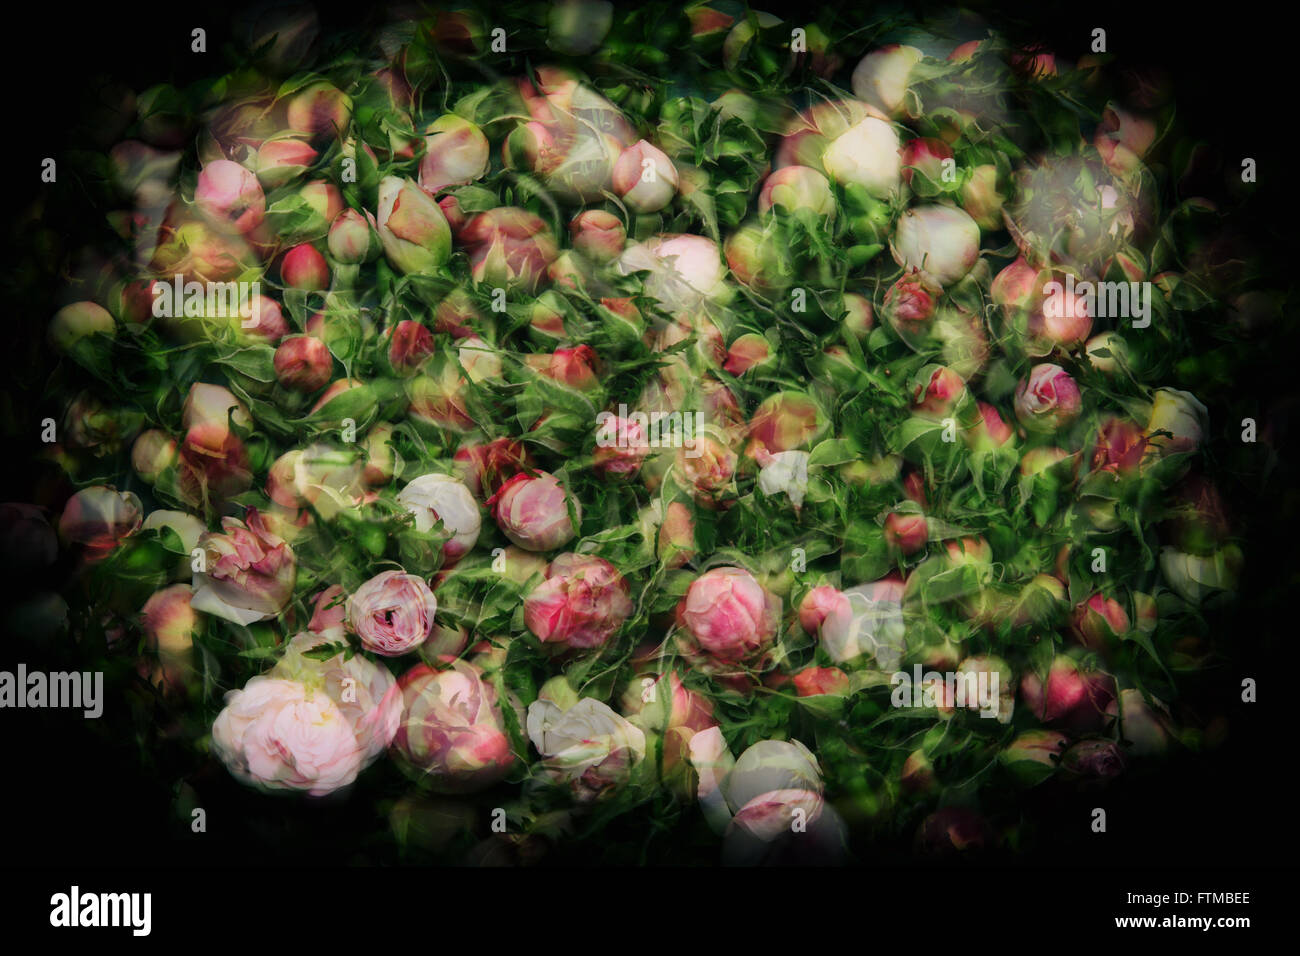 Image of vintage nostalgic roses background texture. Stock Photo